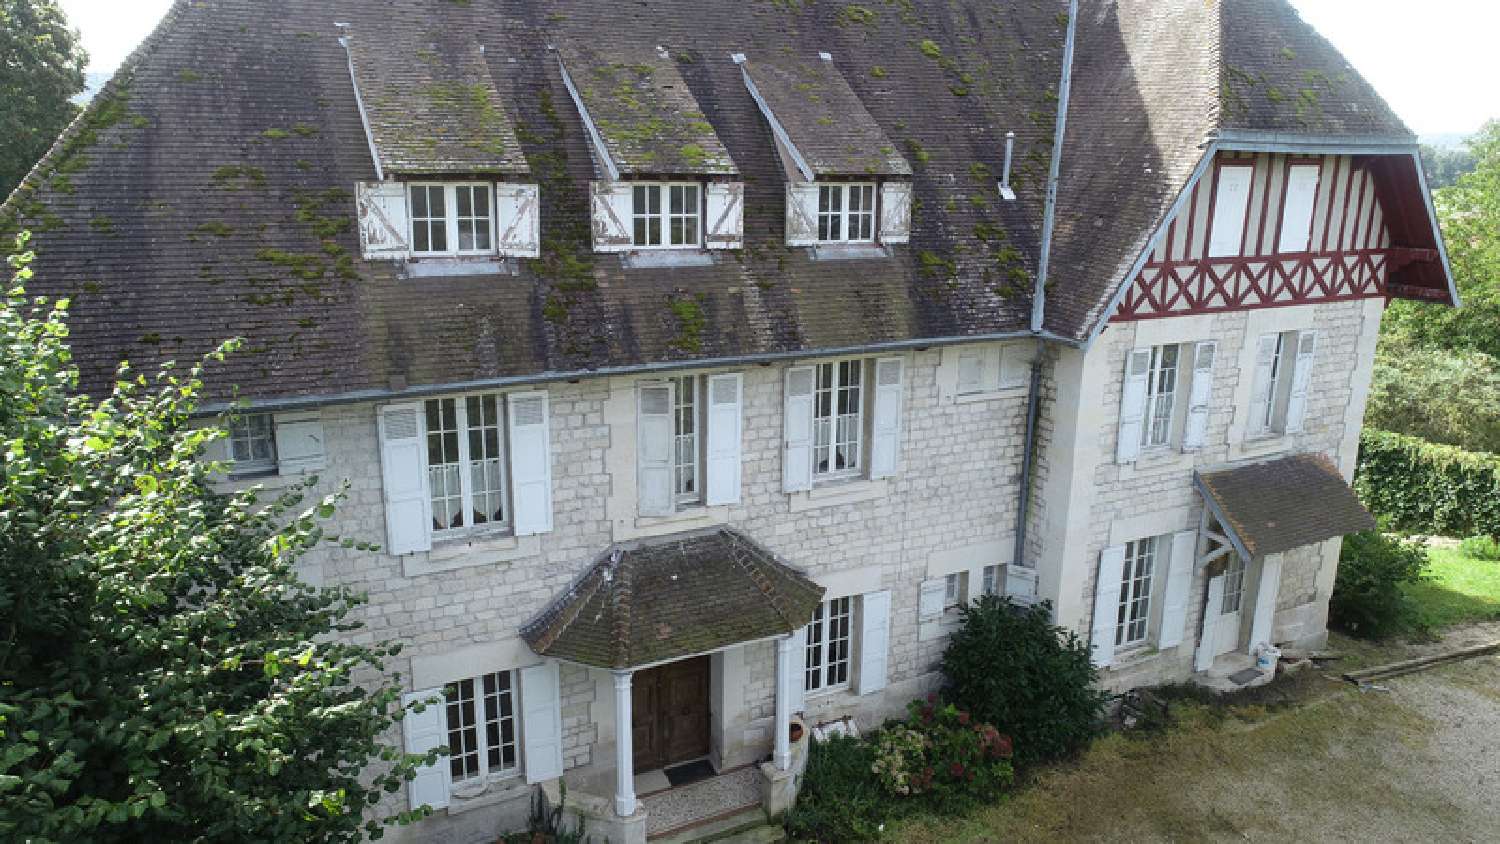  à vendre maison bourgeoise Missy-sur-Aisne Aisne 3